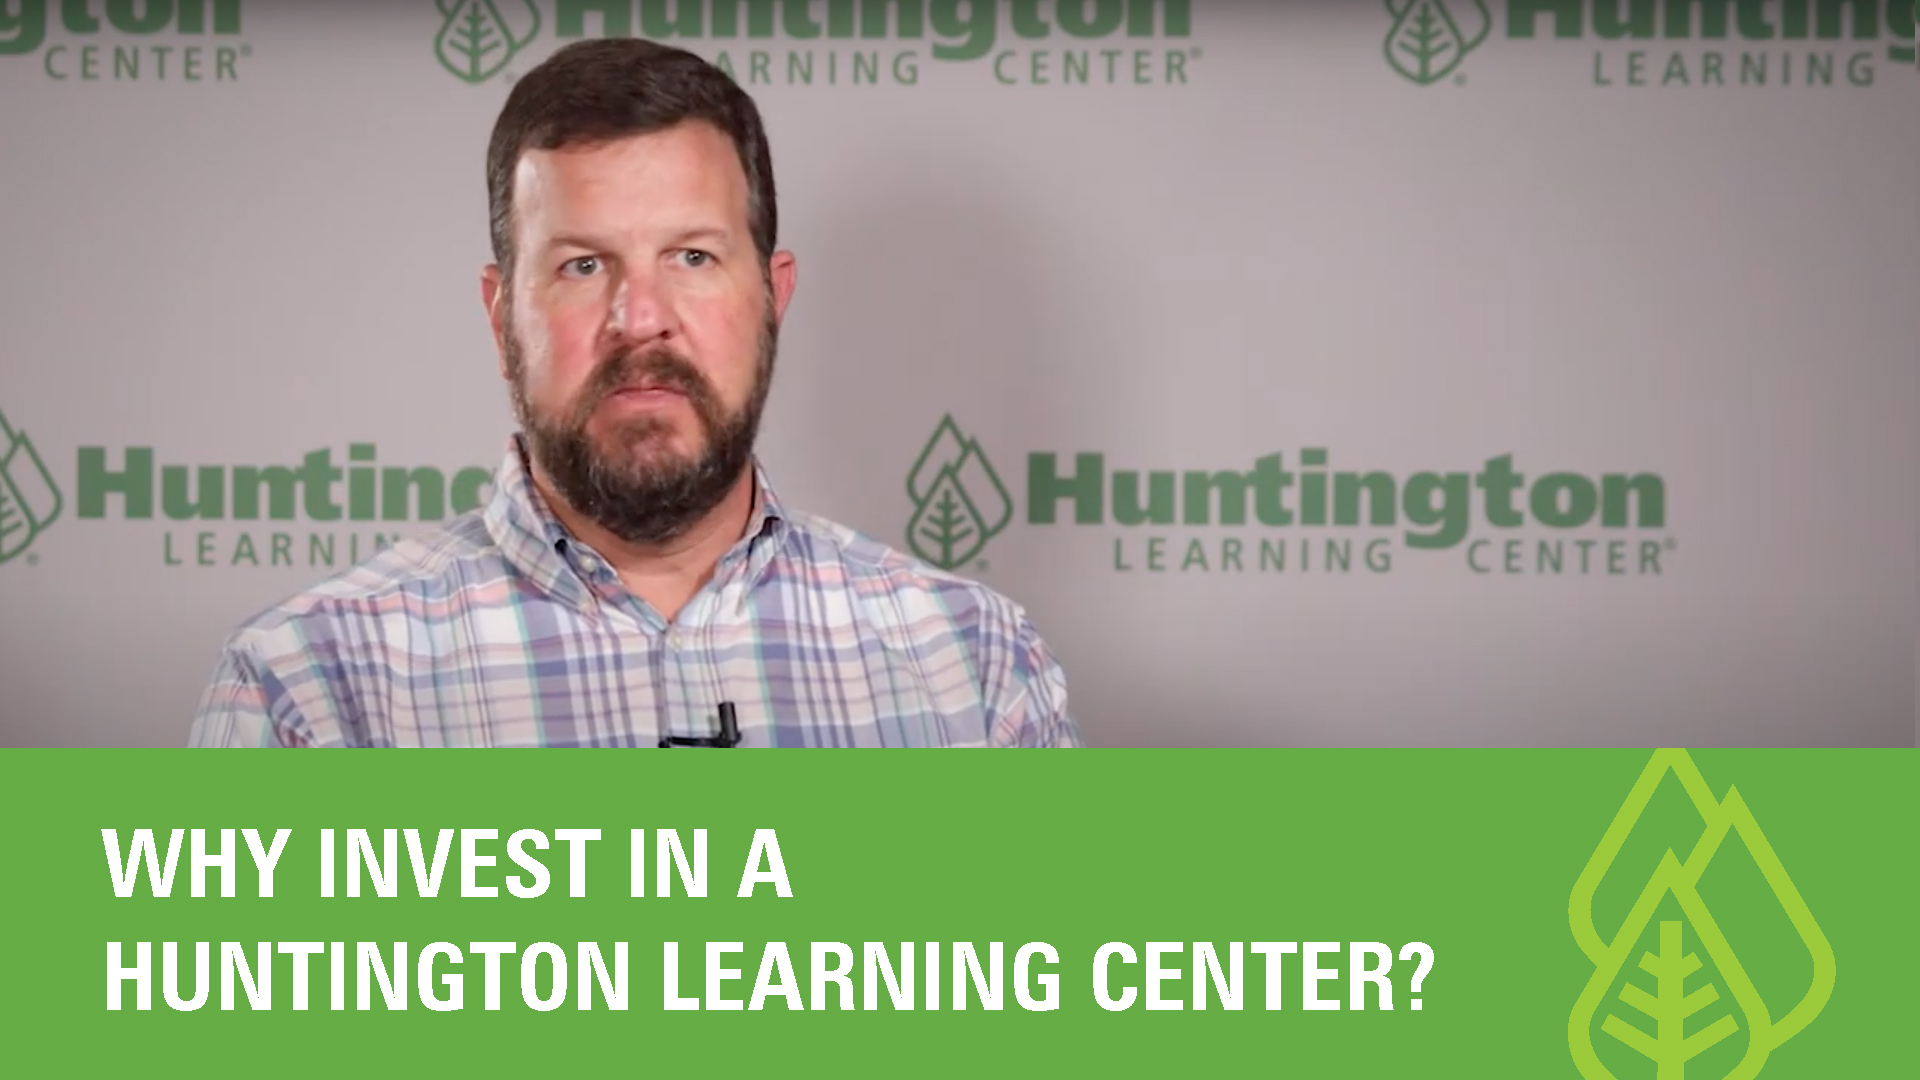 huntington learning center franchise owner